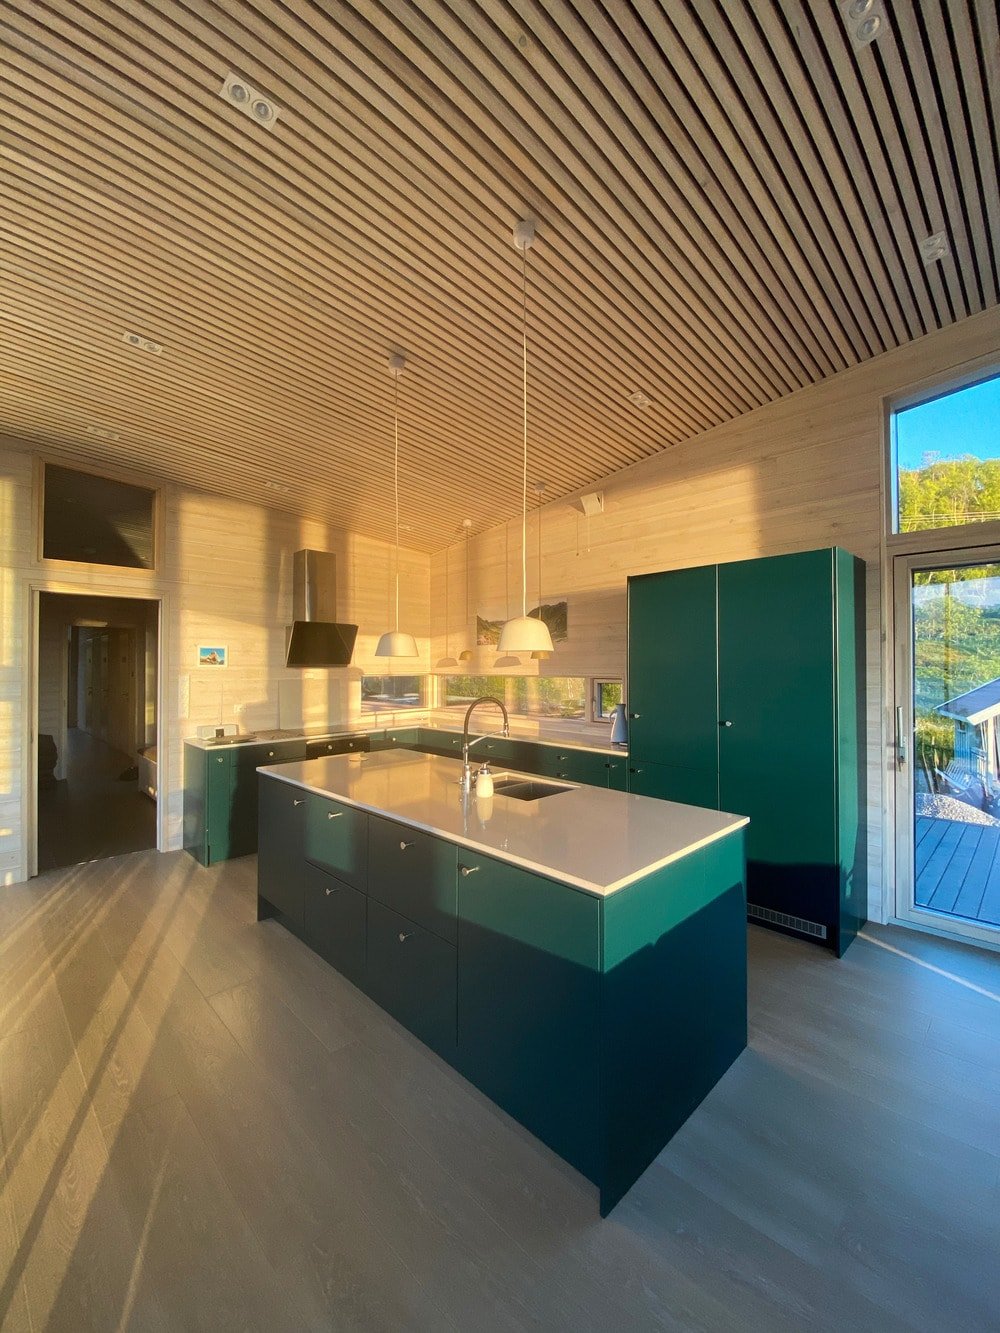 这是从用餐区俯瞰厨房的全景。厨房橱柜的色调与墙壁和天花板的浅色木质元素形成鲜明对比。